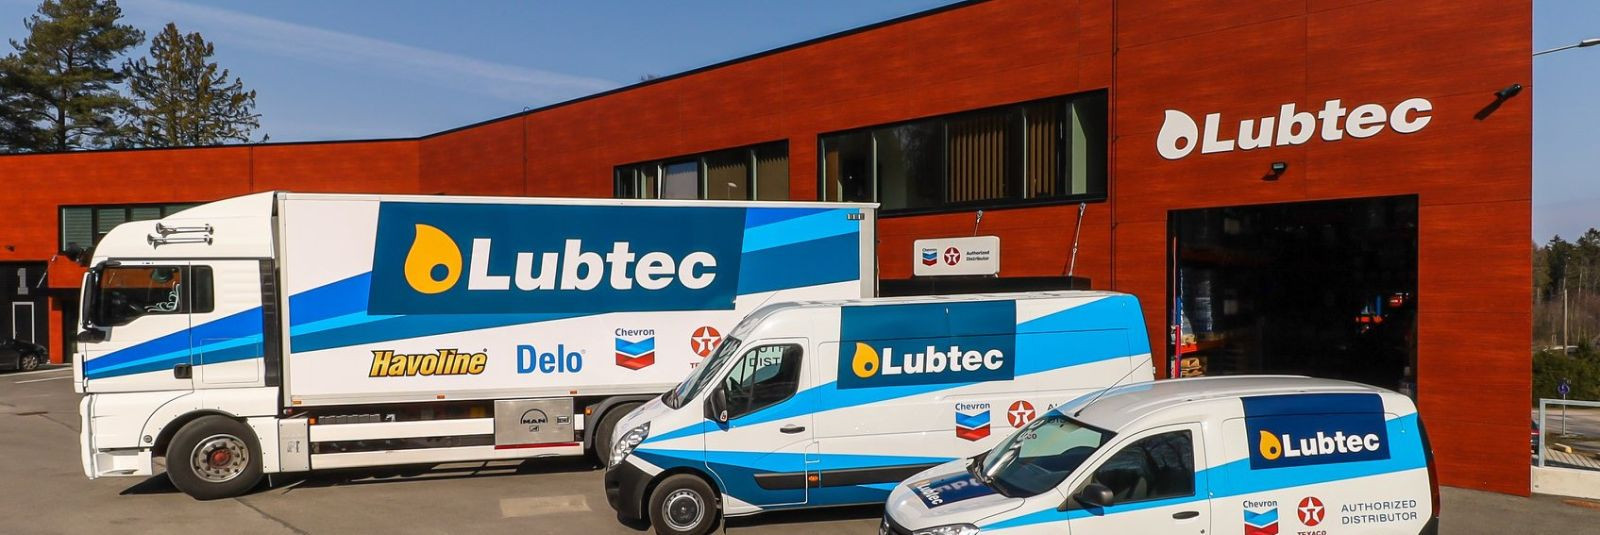 LUBTEC OÜ on tuntud ja usaldusväärne ettevõte, mis on ametlik Chevron Texaco brändi õlide ja määrdeainete maaletooja Eestis ja Lätis. Ettevõte on spetsialiseeru